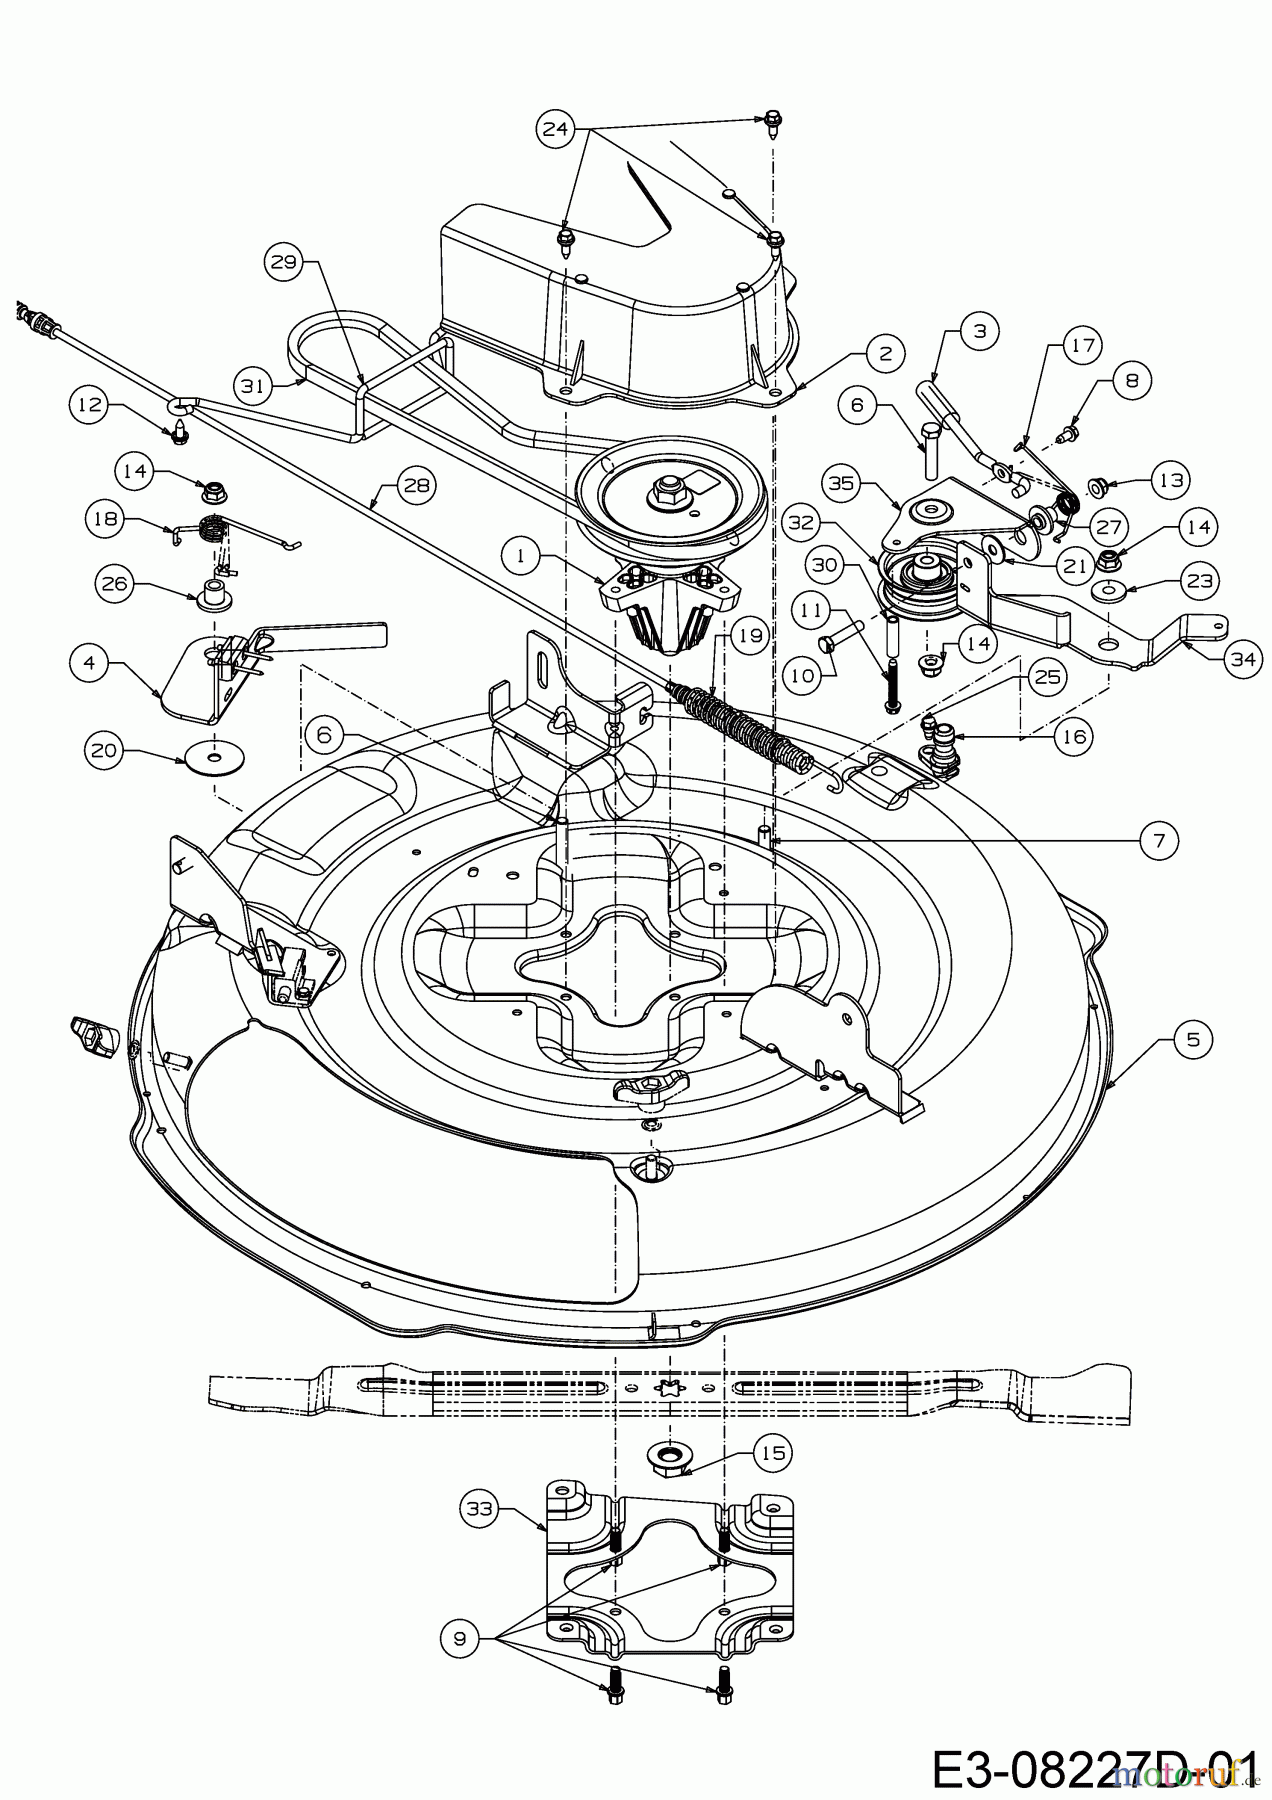  WOLF-Garten Expert Rasentraktoren Scooter Pro Hydro 13A221HD650  (2017) Mähwerk D (30